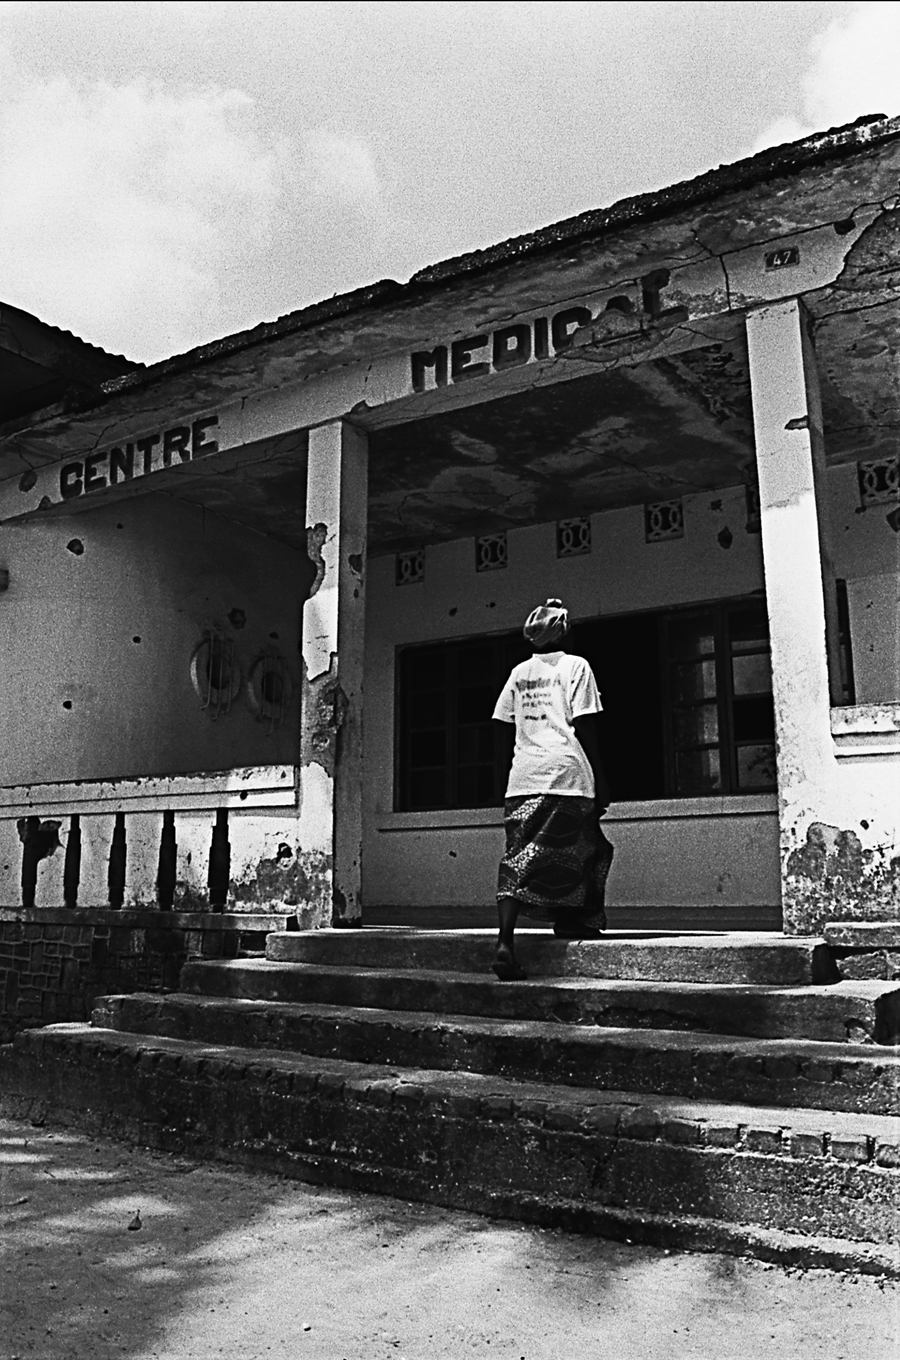 Légende photo 1 : Le Centre médical de Kisangani a été bombardé au cours des guerres de 1996 et 1998. Résultat, des milliers de morts et de blessés.